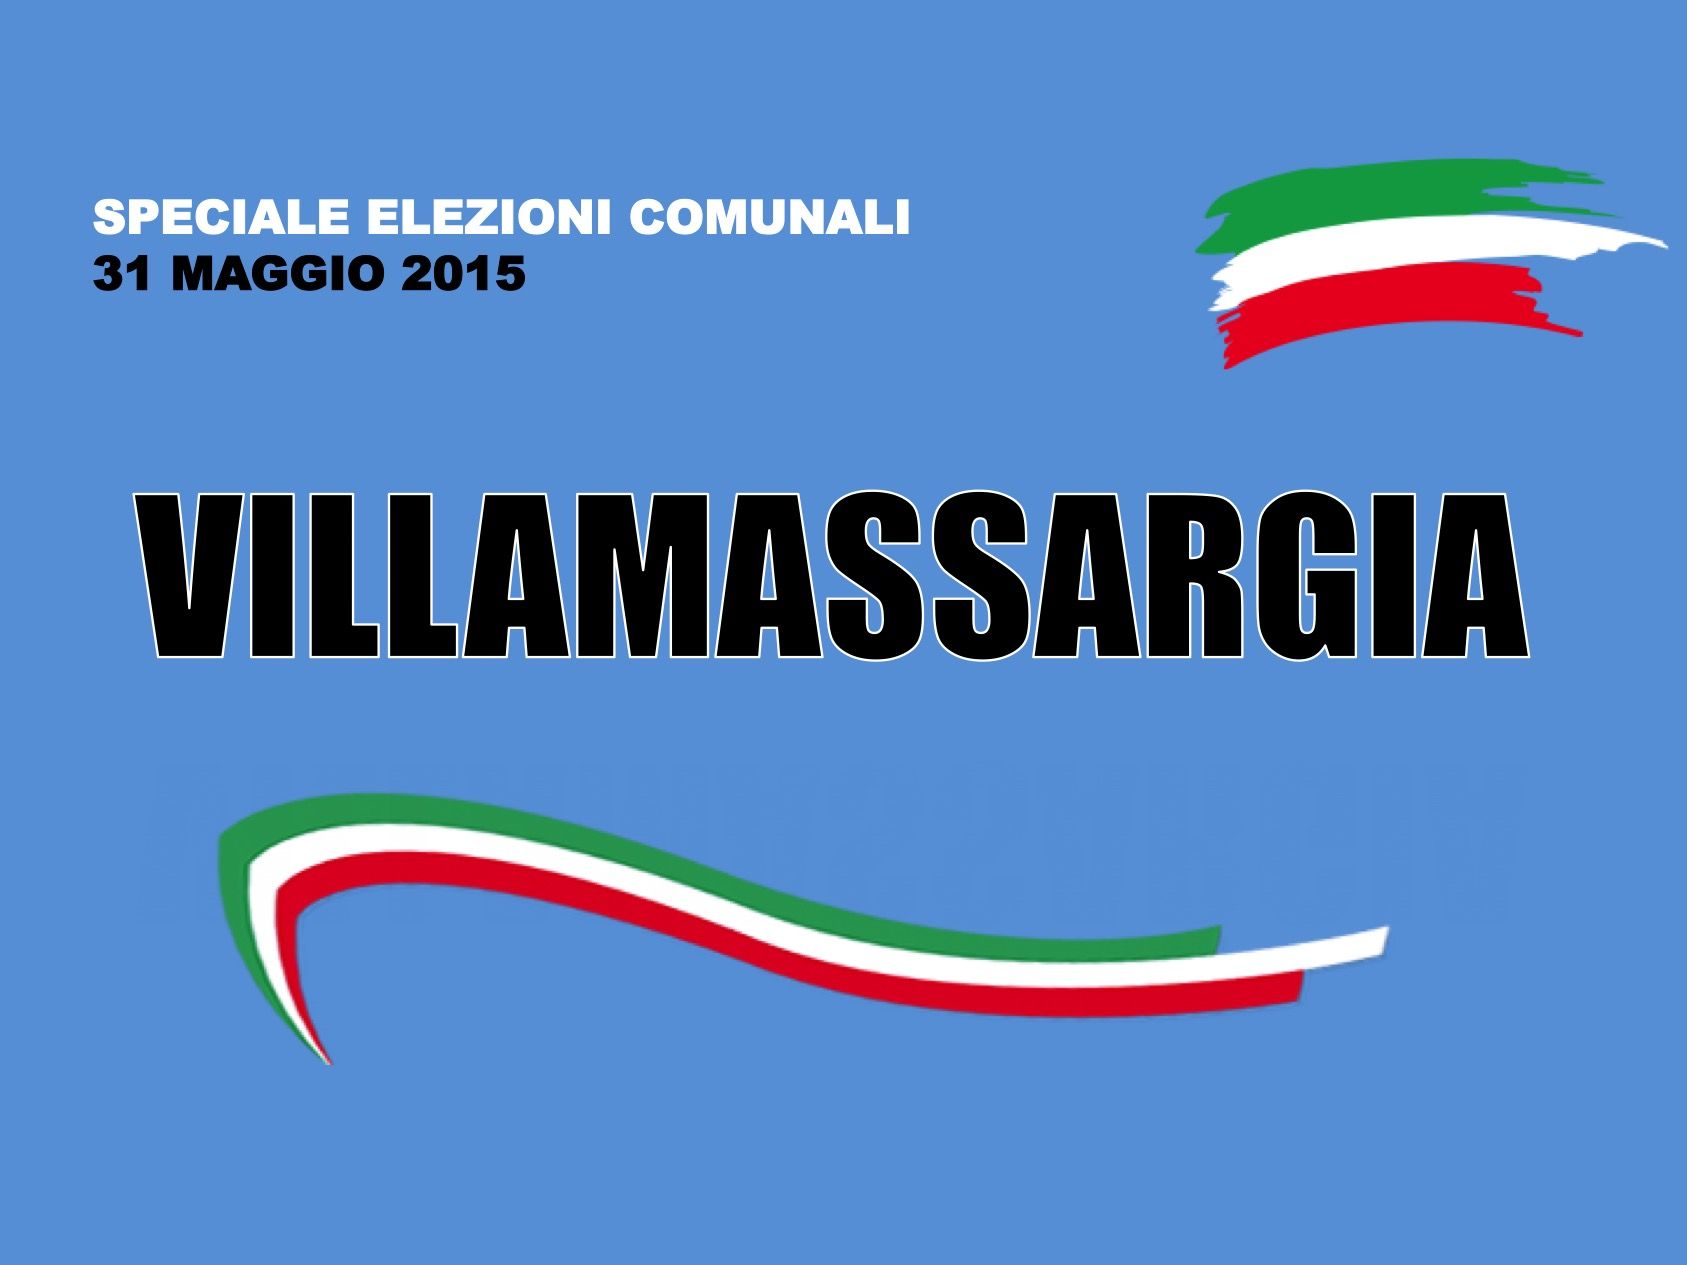 Villamassargia. Elezioni Comunali 31 maggio 2015. I risultati delle votazioni